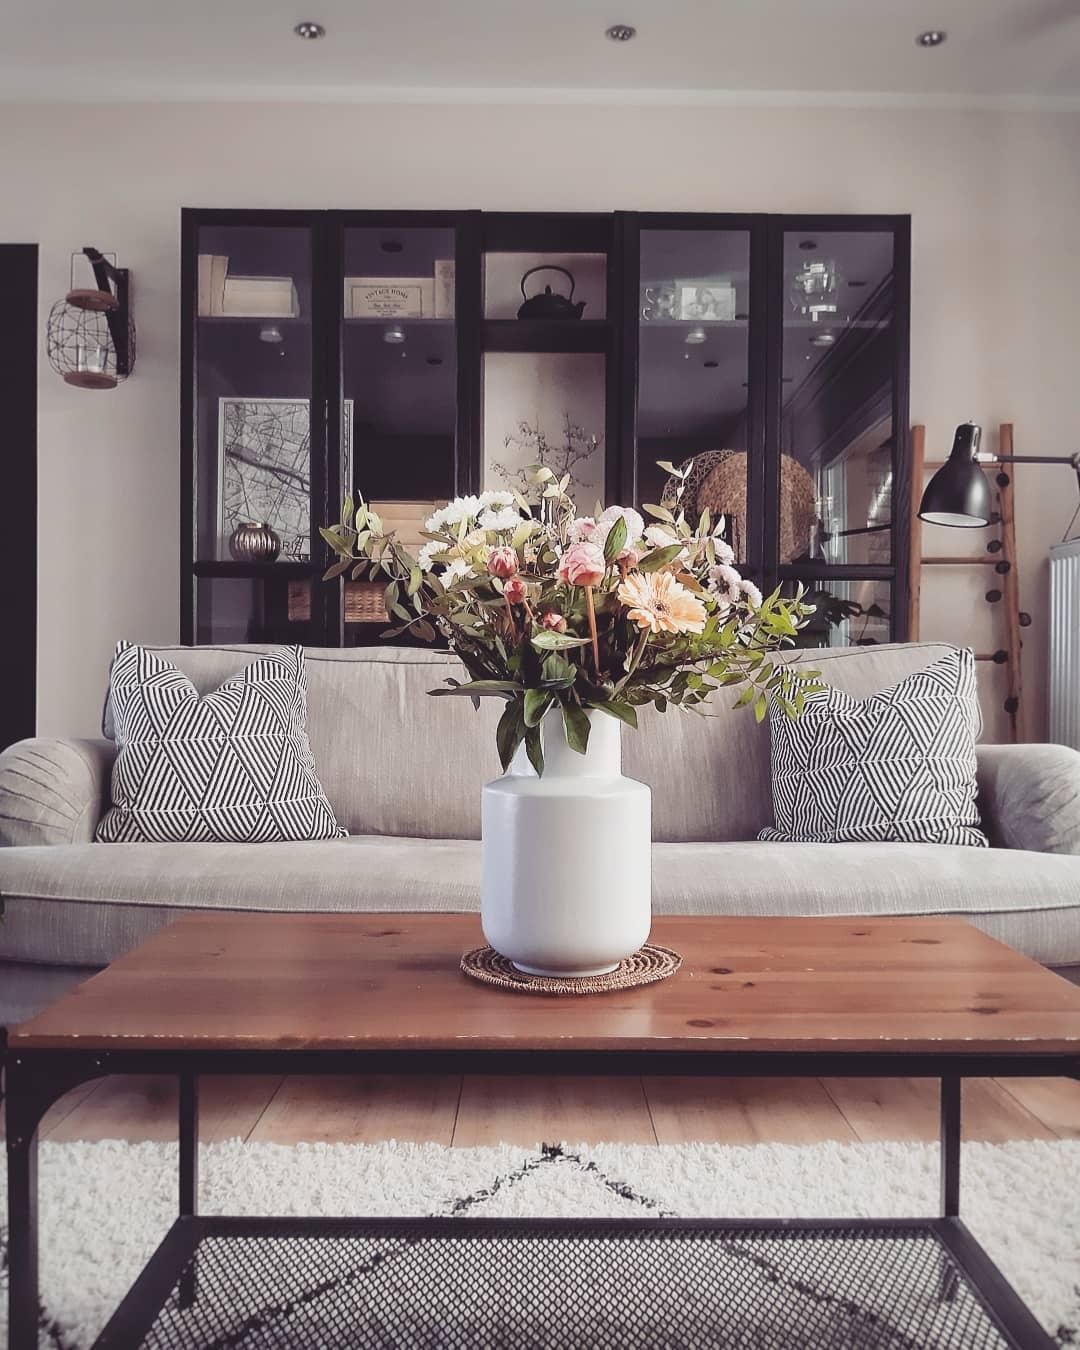 Alles Liebe zum #freshflowerfriday 💐 #Blumen #Wohnzimmer #zuhause